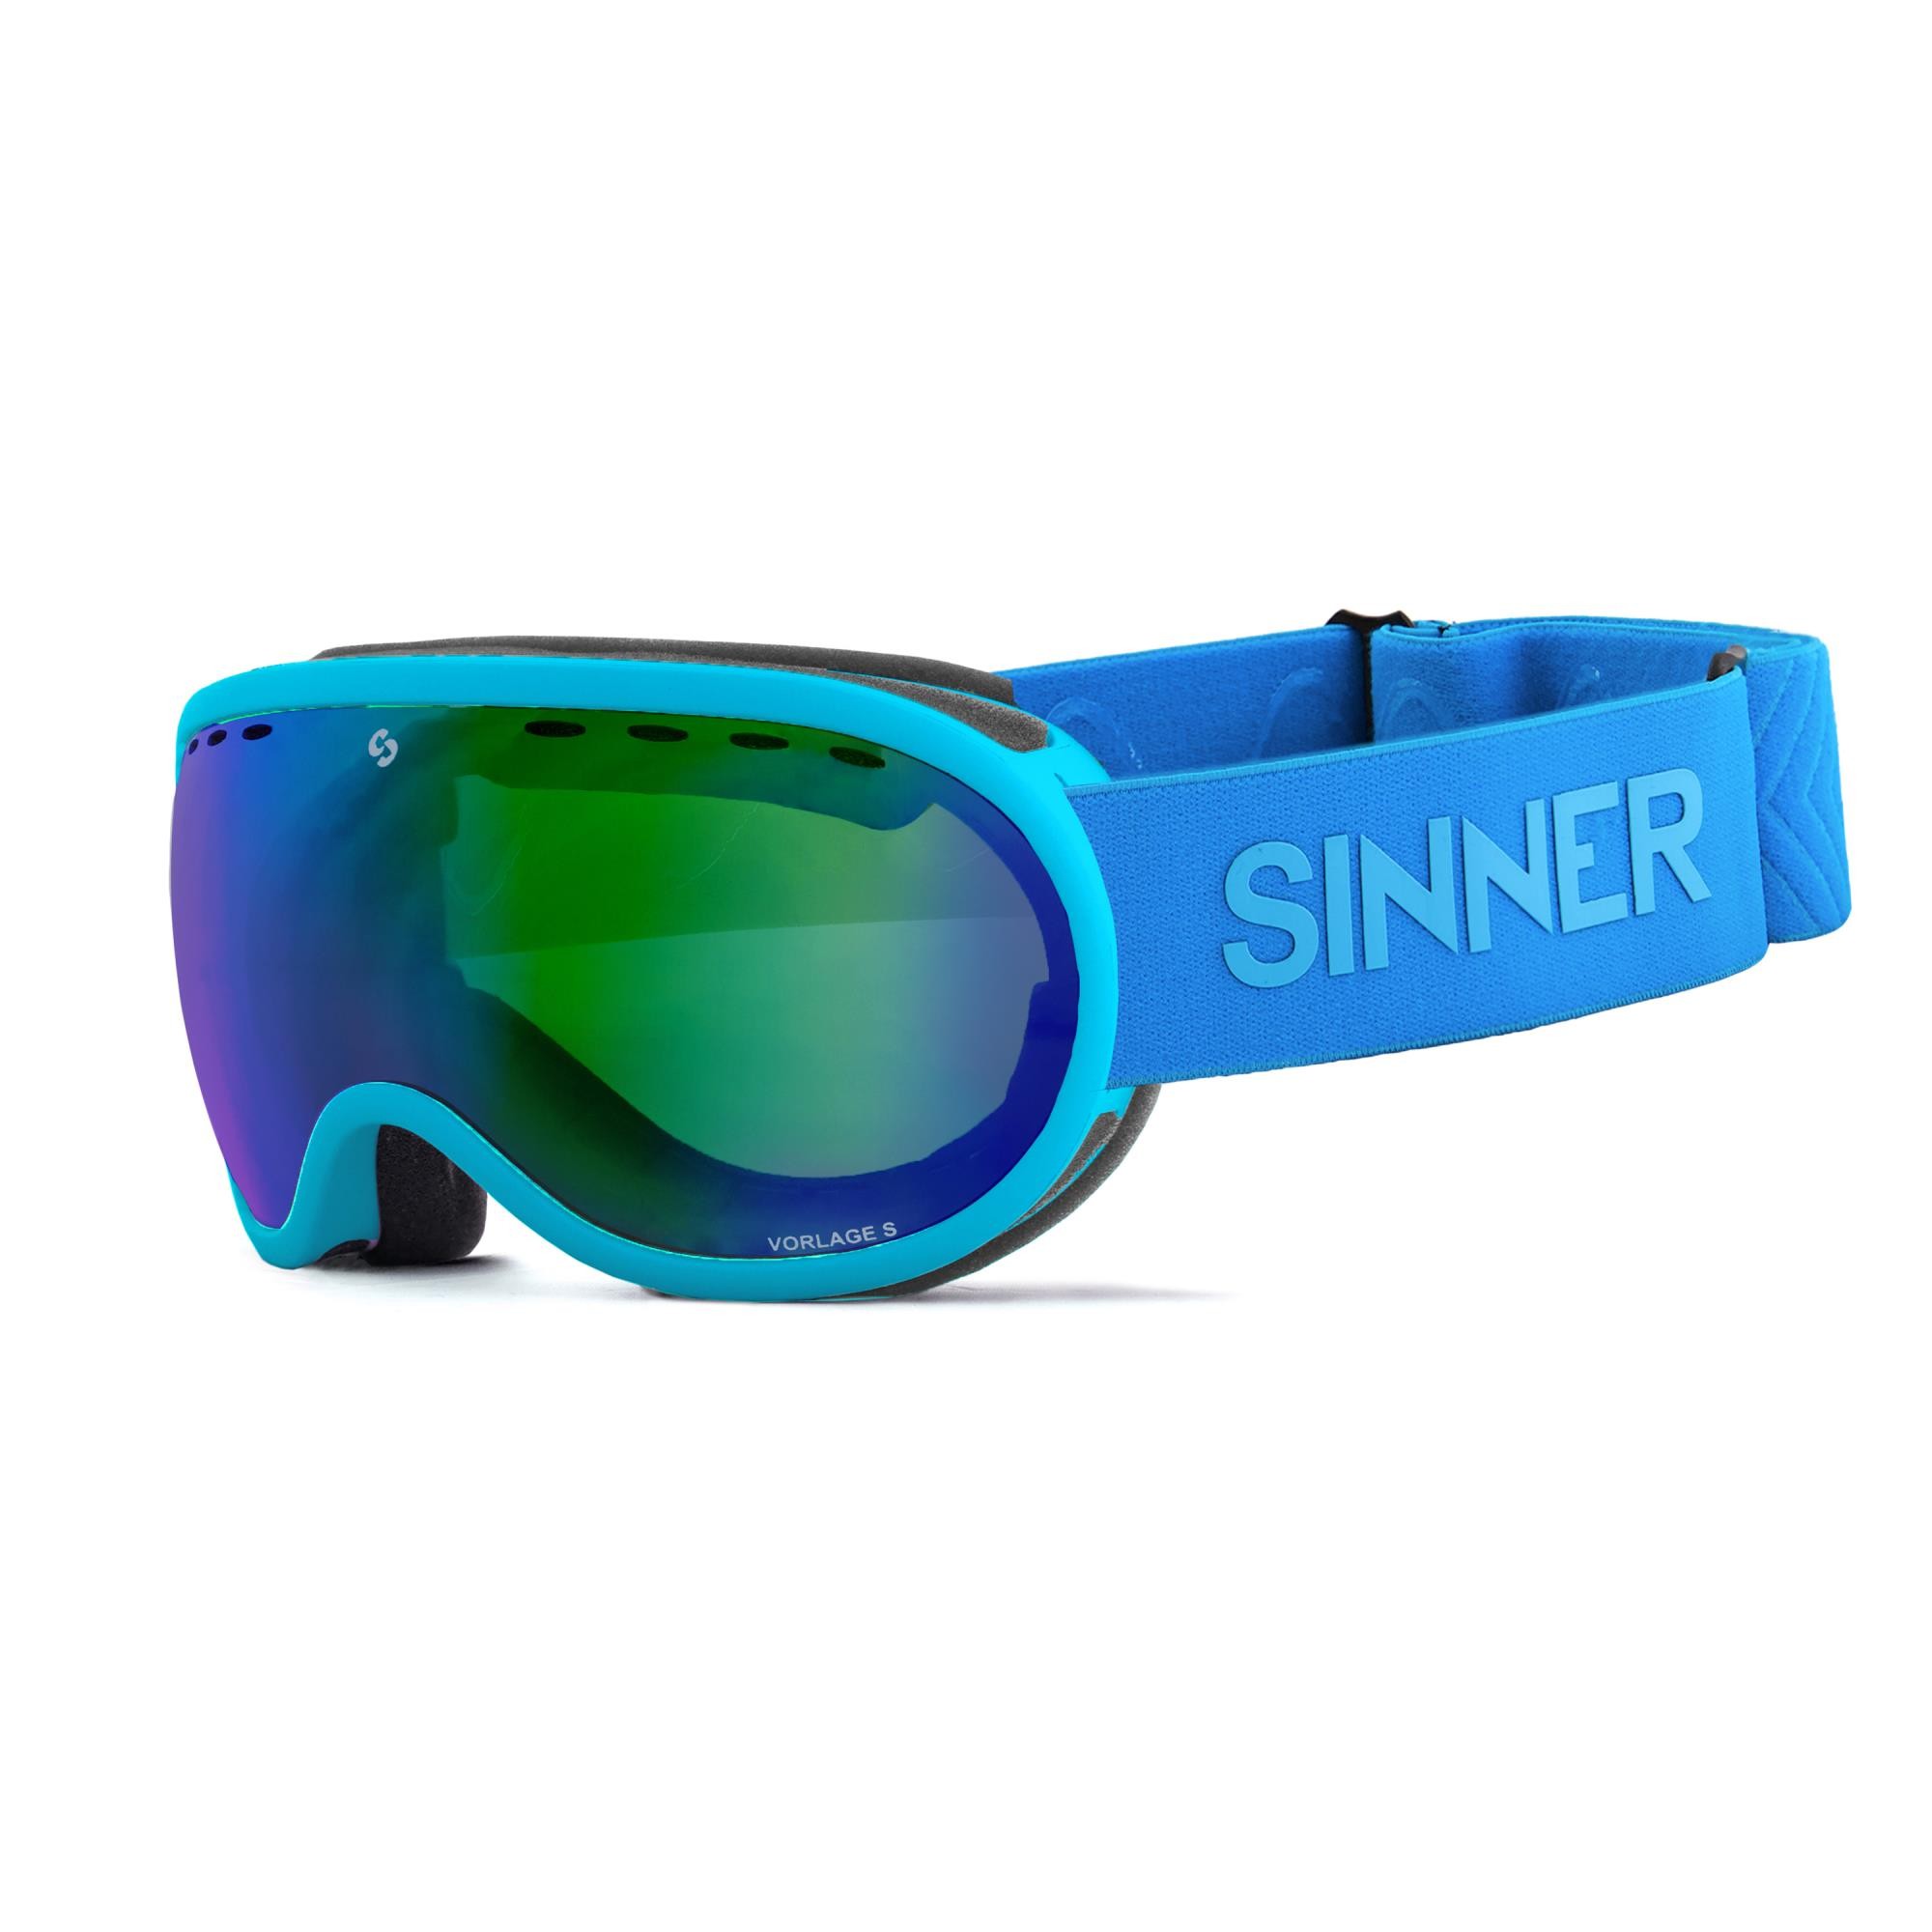 SINNER - VORLAGE S SKIBRIL - Mat blauw - Unisex - One Size